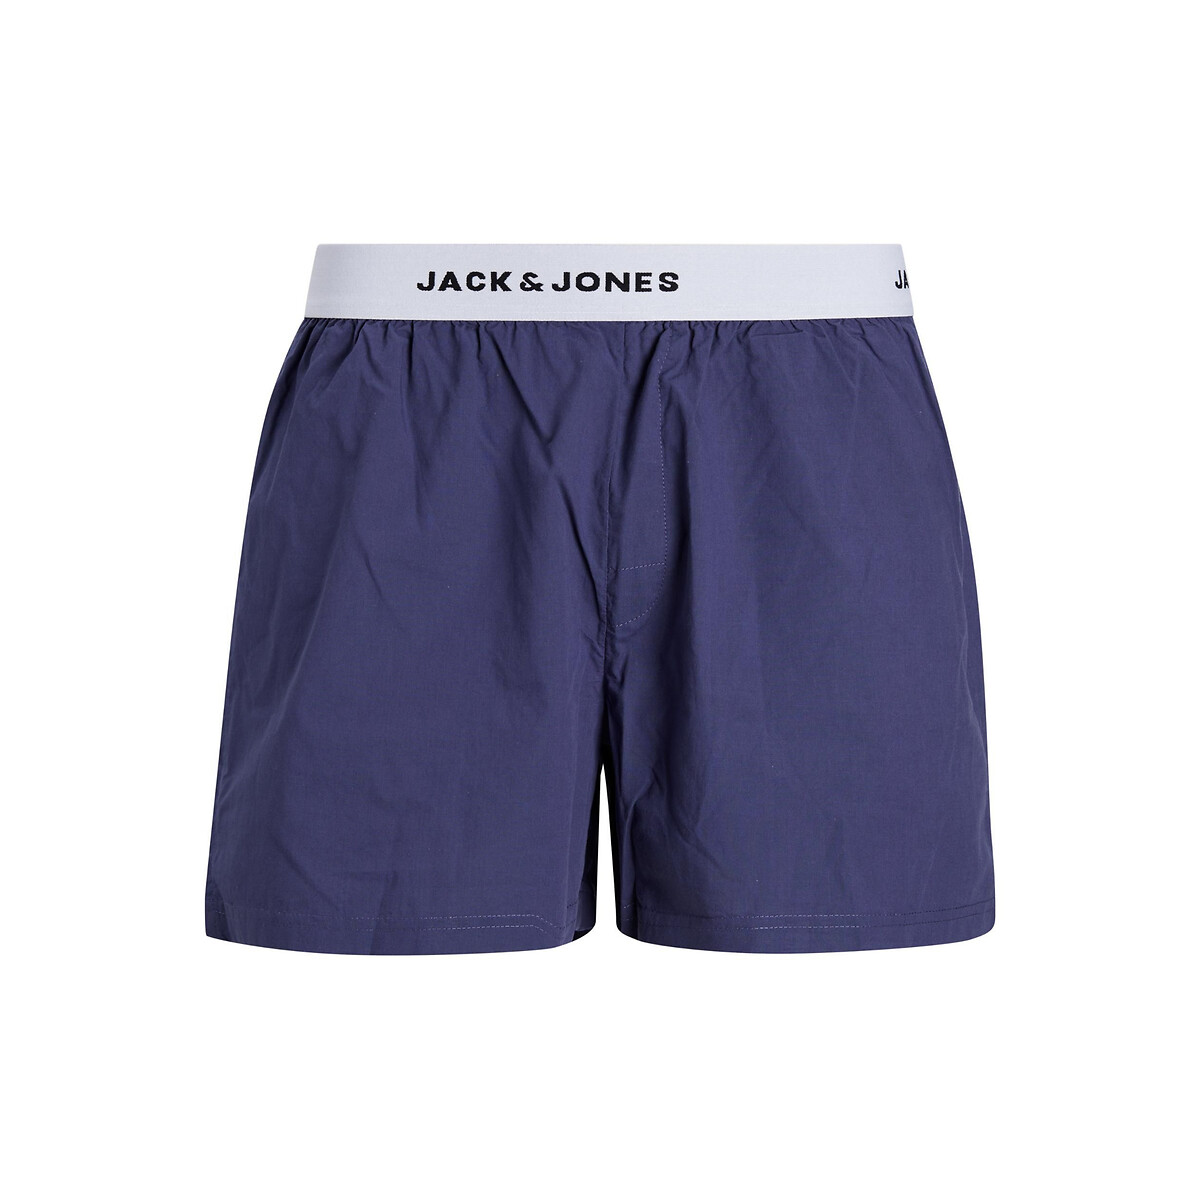 Комплект из 2 трусов JACK & JONES Комплект из 2 трусов La Redoute XL синий, размер XL - фото 3